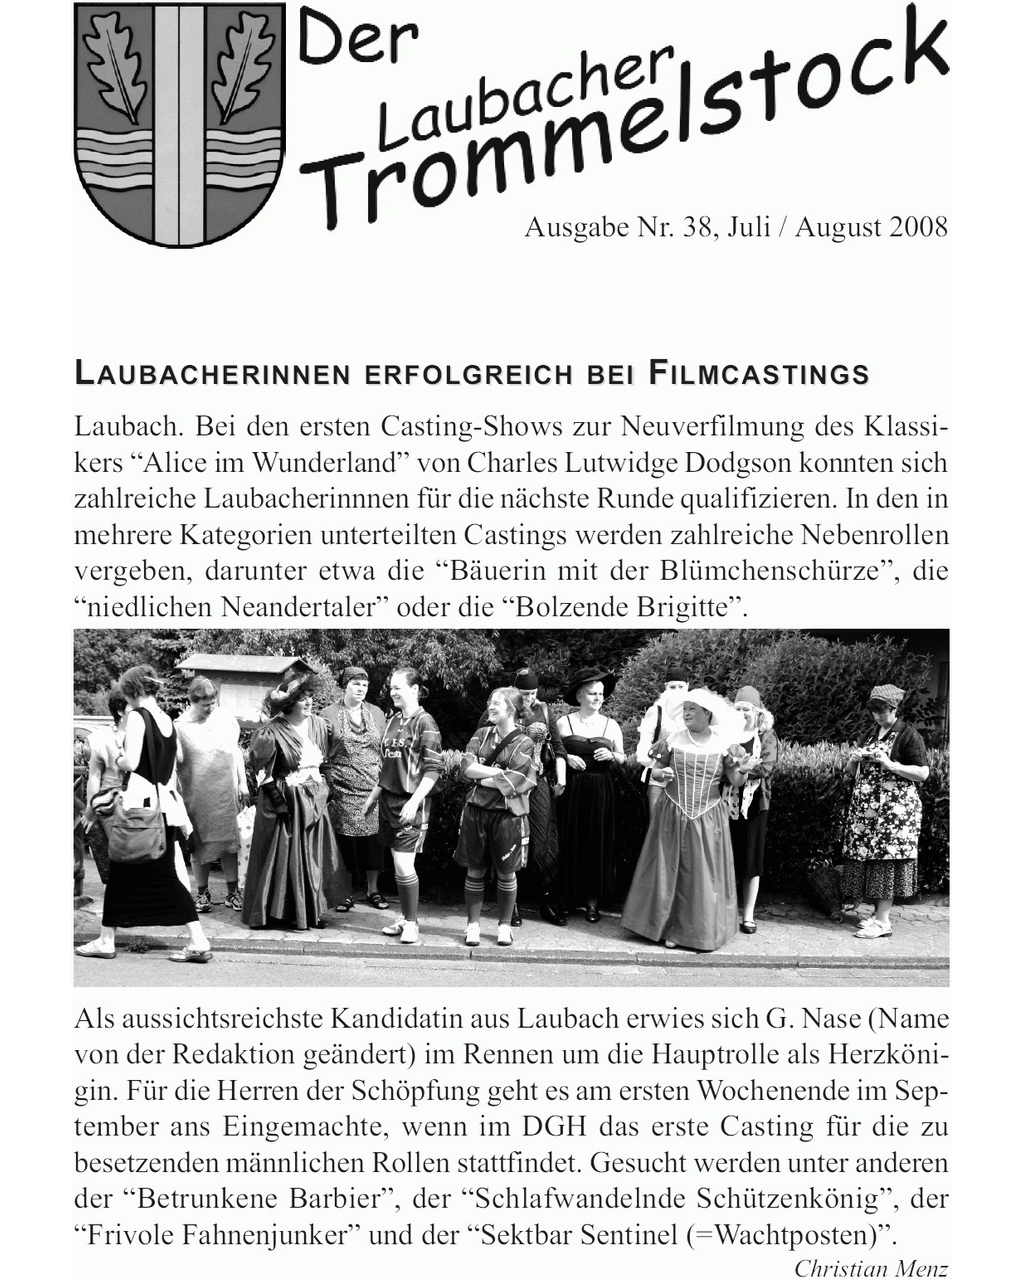 Laubacher-Trommelstock-Titelseite-038